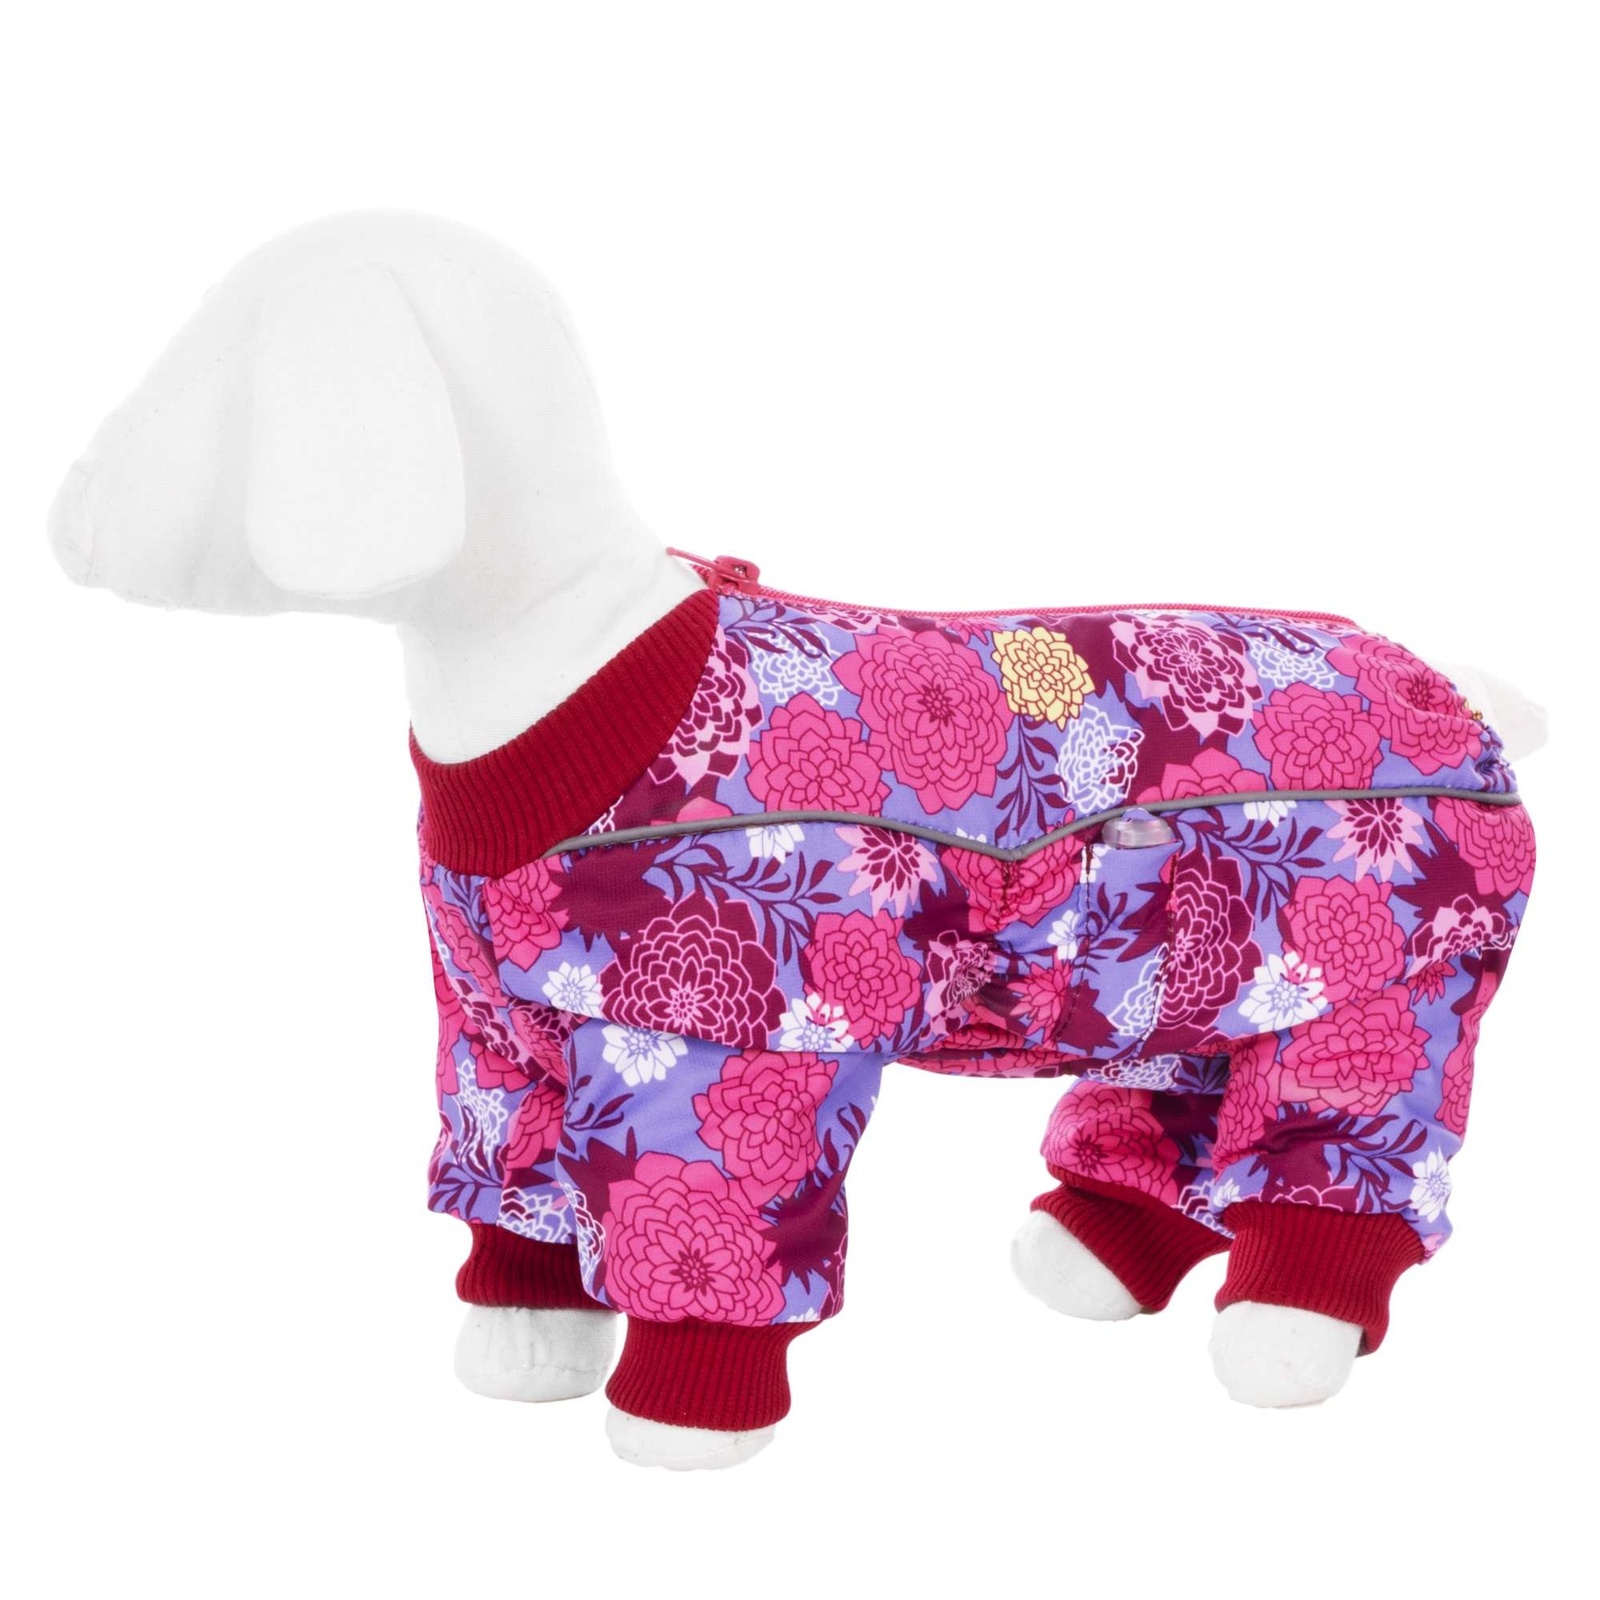 Yami-Yami одежда Yami-Yami одежда комбинезон для собак малых пород, на флисе с рисунком цветы (100 г) yami yami одежда yami yami одежда комбинезон для собак малых пород на меху с рисунком снежинки s